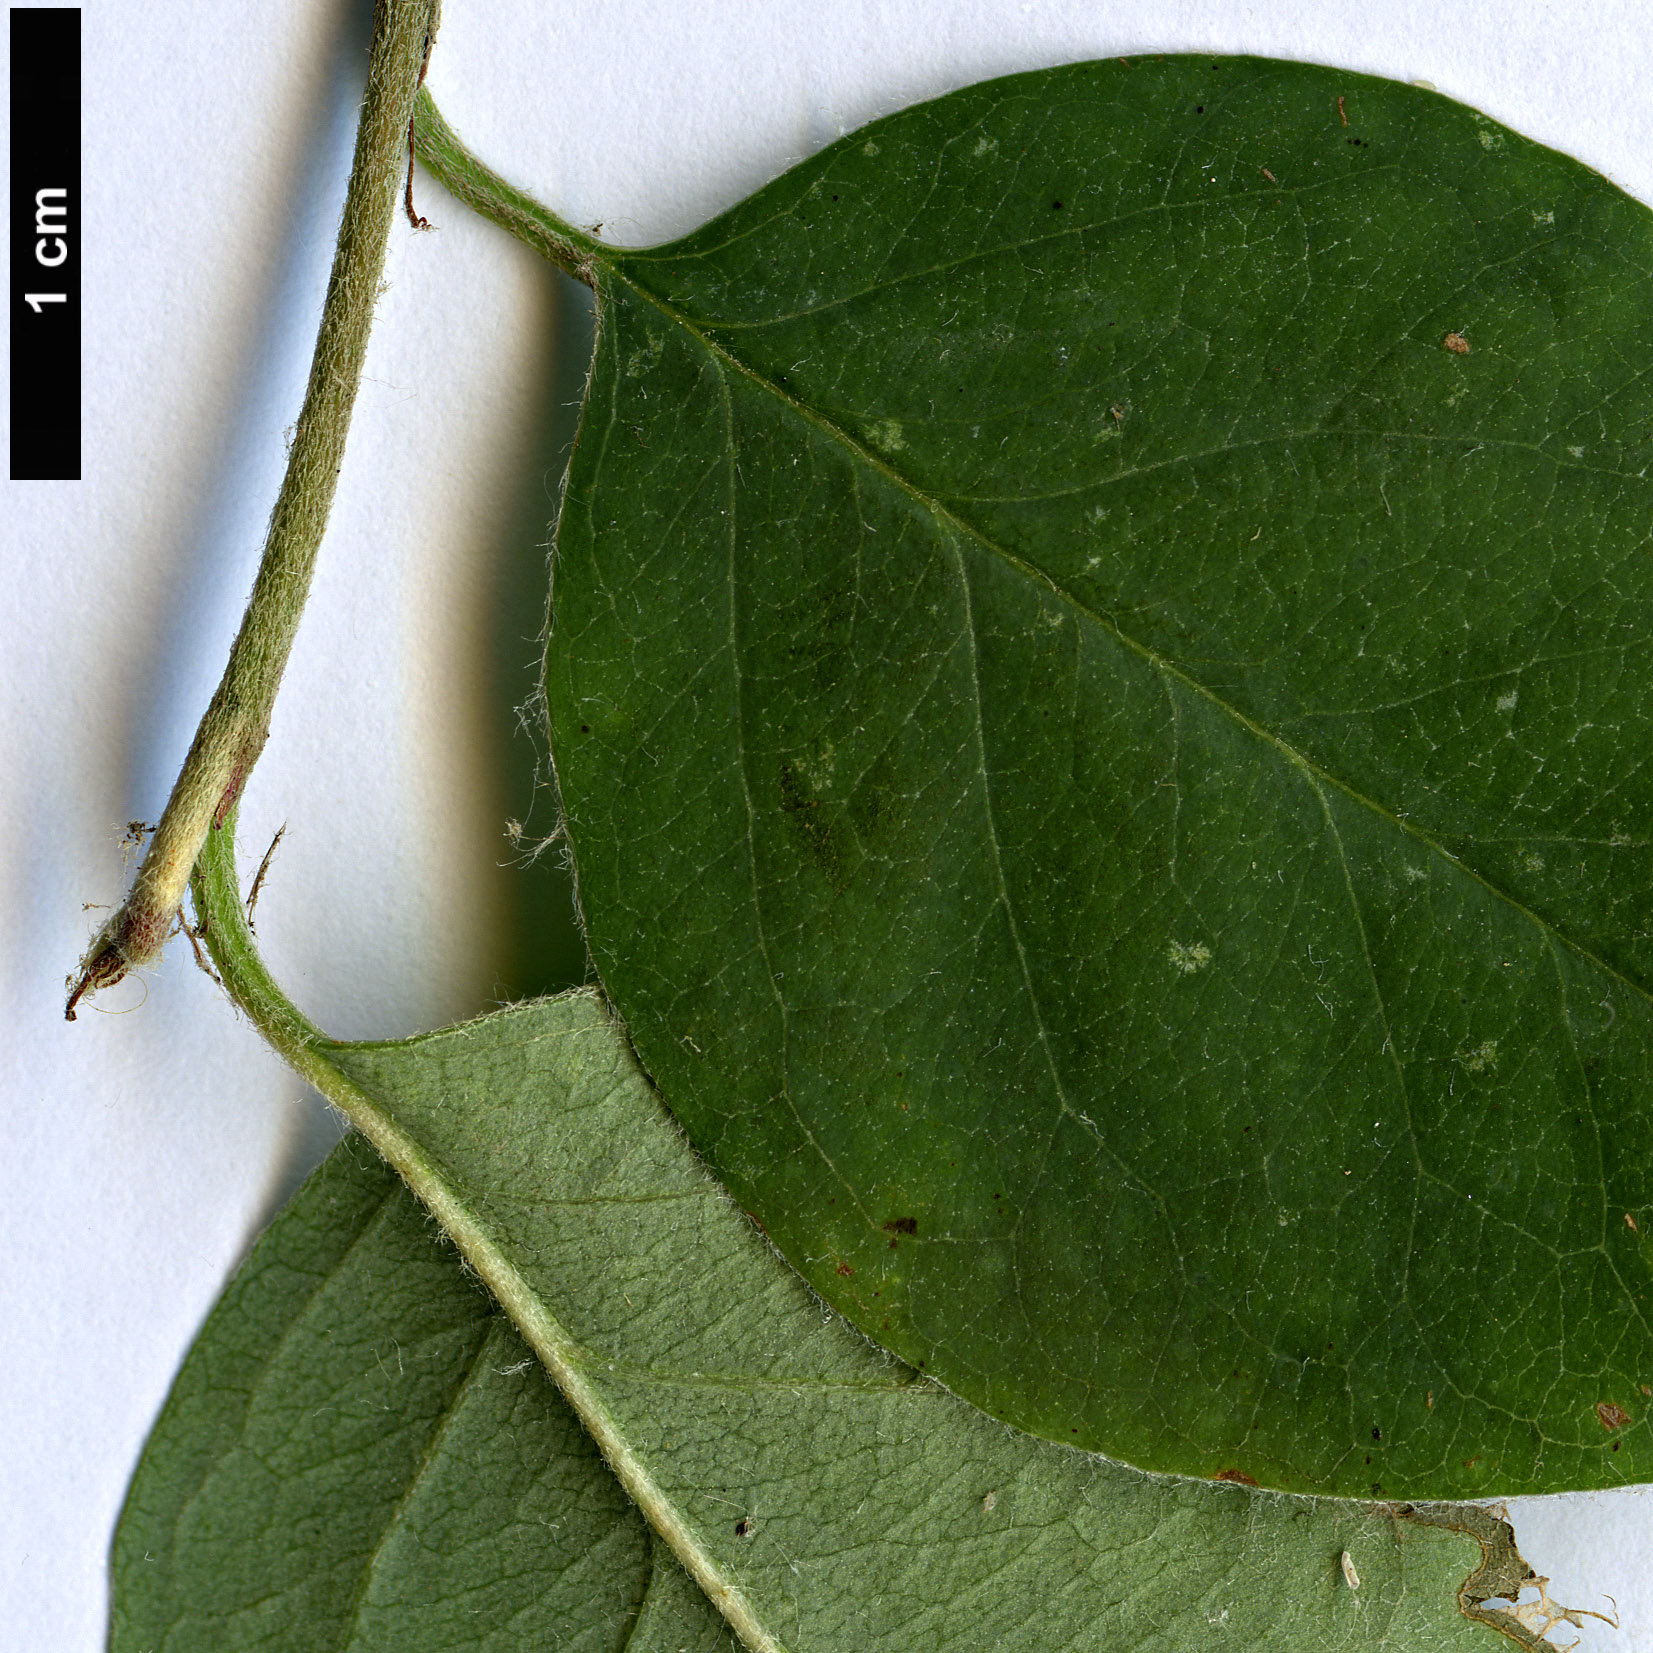 High resolution image: Family: Rosaceae - Genus: Cotoneaster - Taxon: albokermesinus